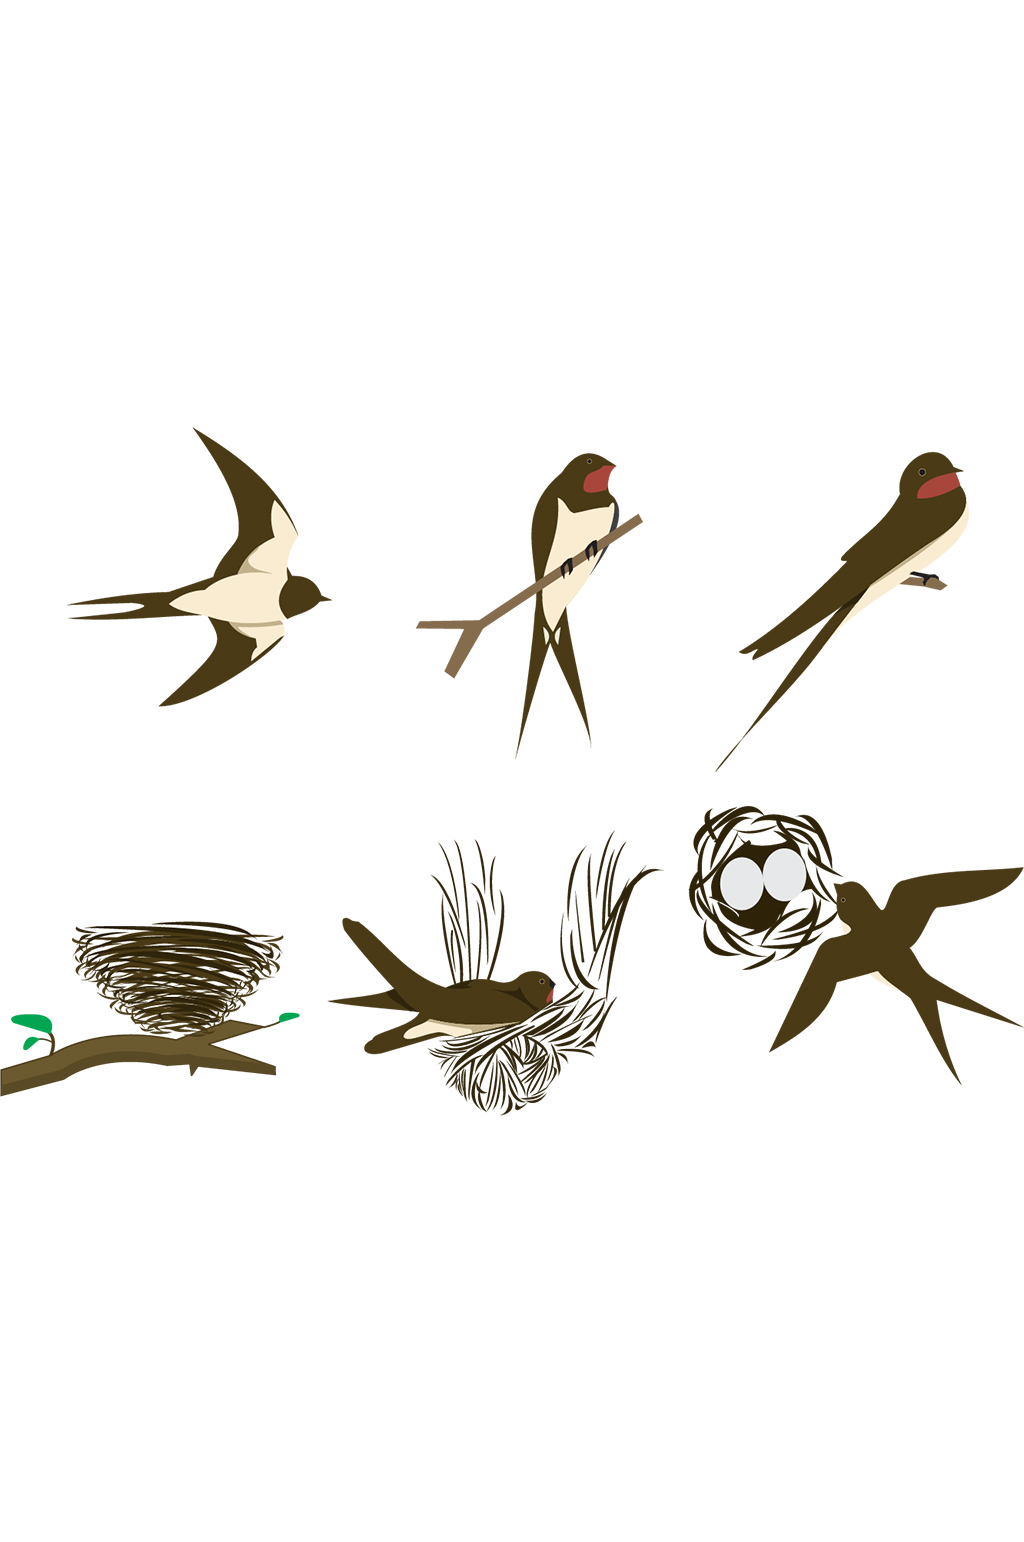 燕子筑巢 卡通图片